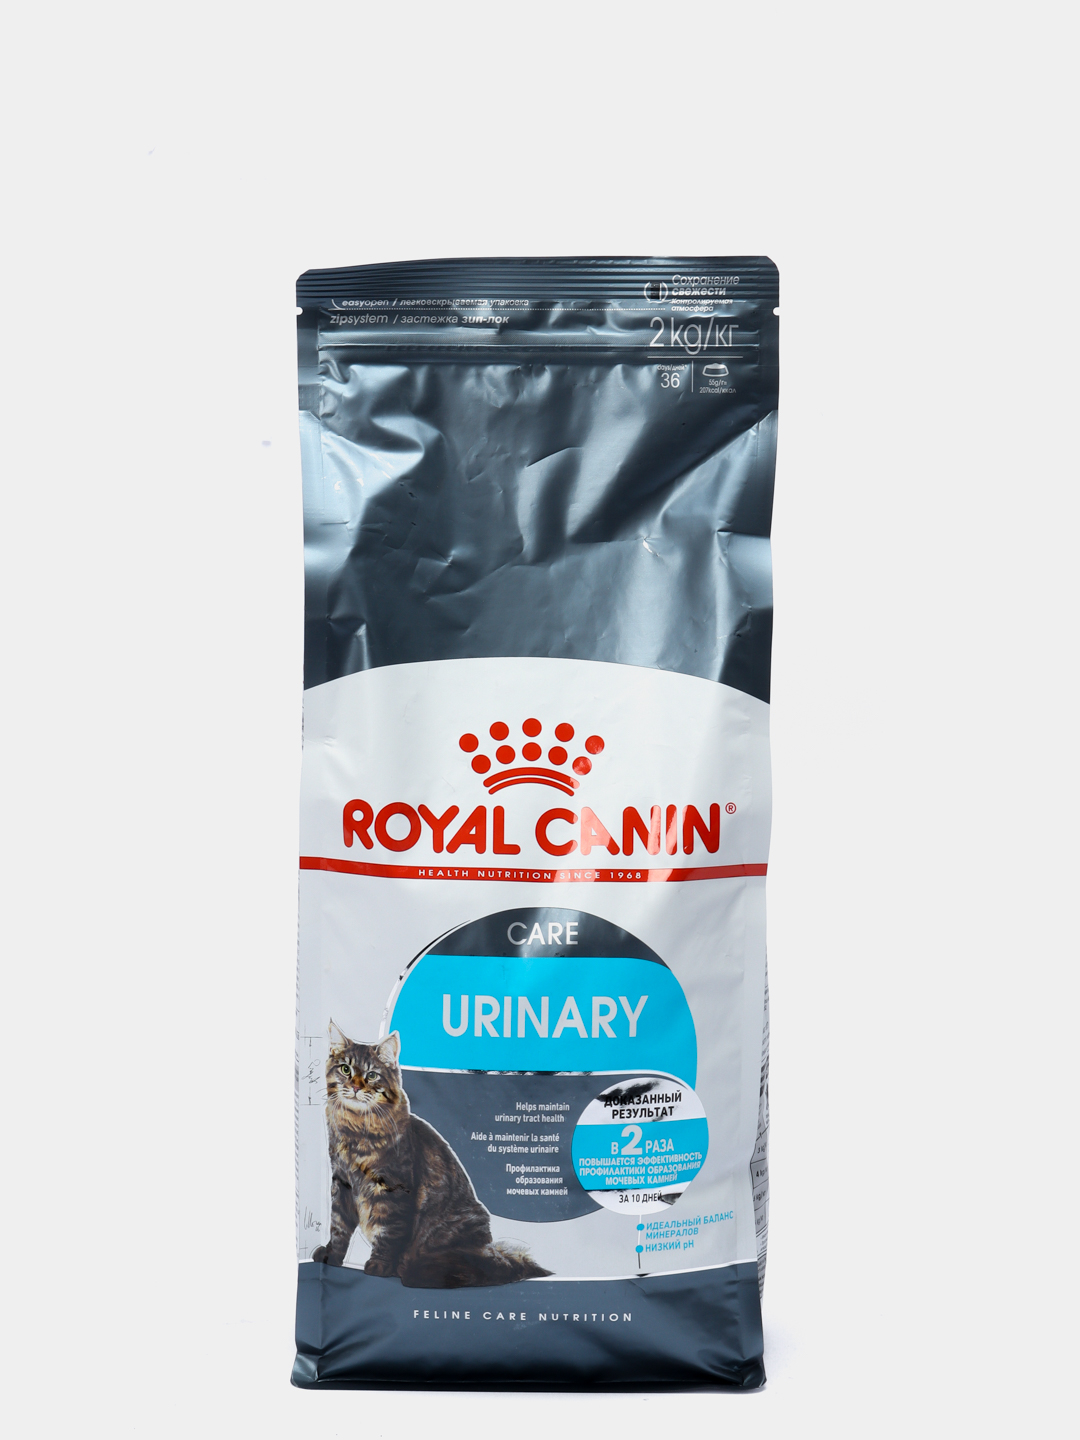 Royal canin urinary care для кошек. Роял Канин Уринари Care. Корм Роял Канин для кошек Уринари профилактика. Для кошек Royal Canin Urinary 2кг. Роял Канин Уринари для профилактики мкб.